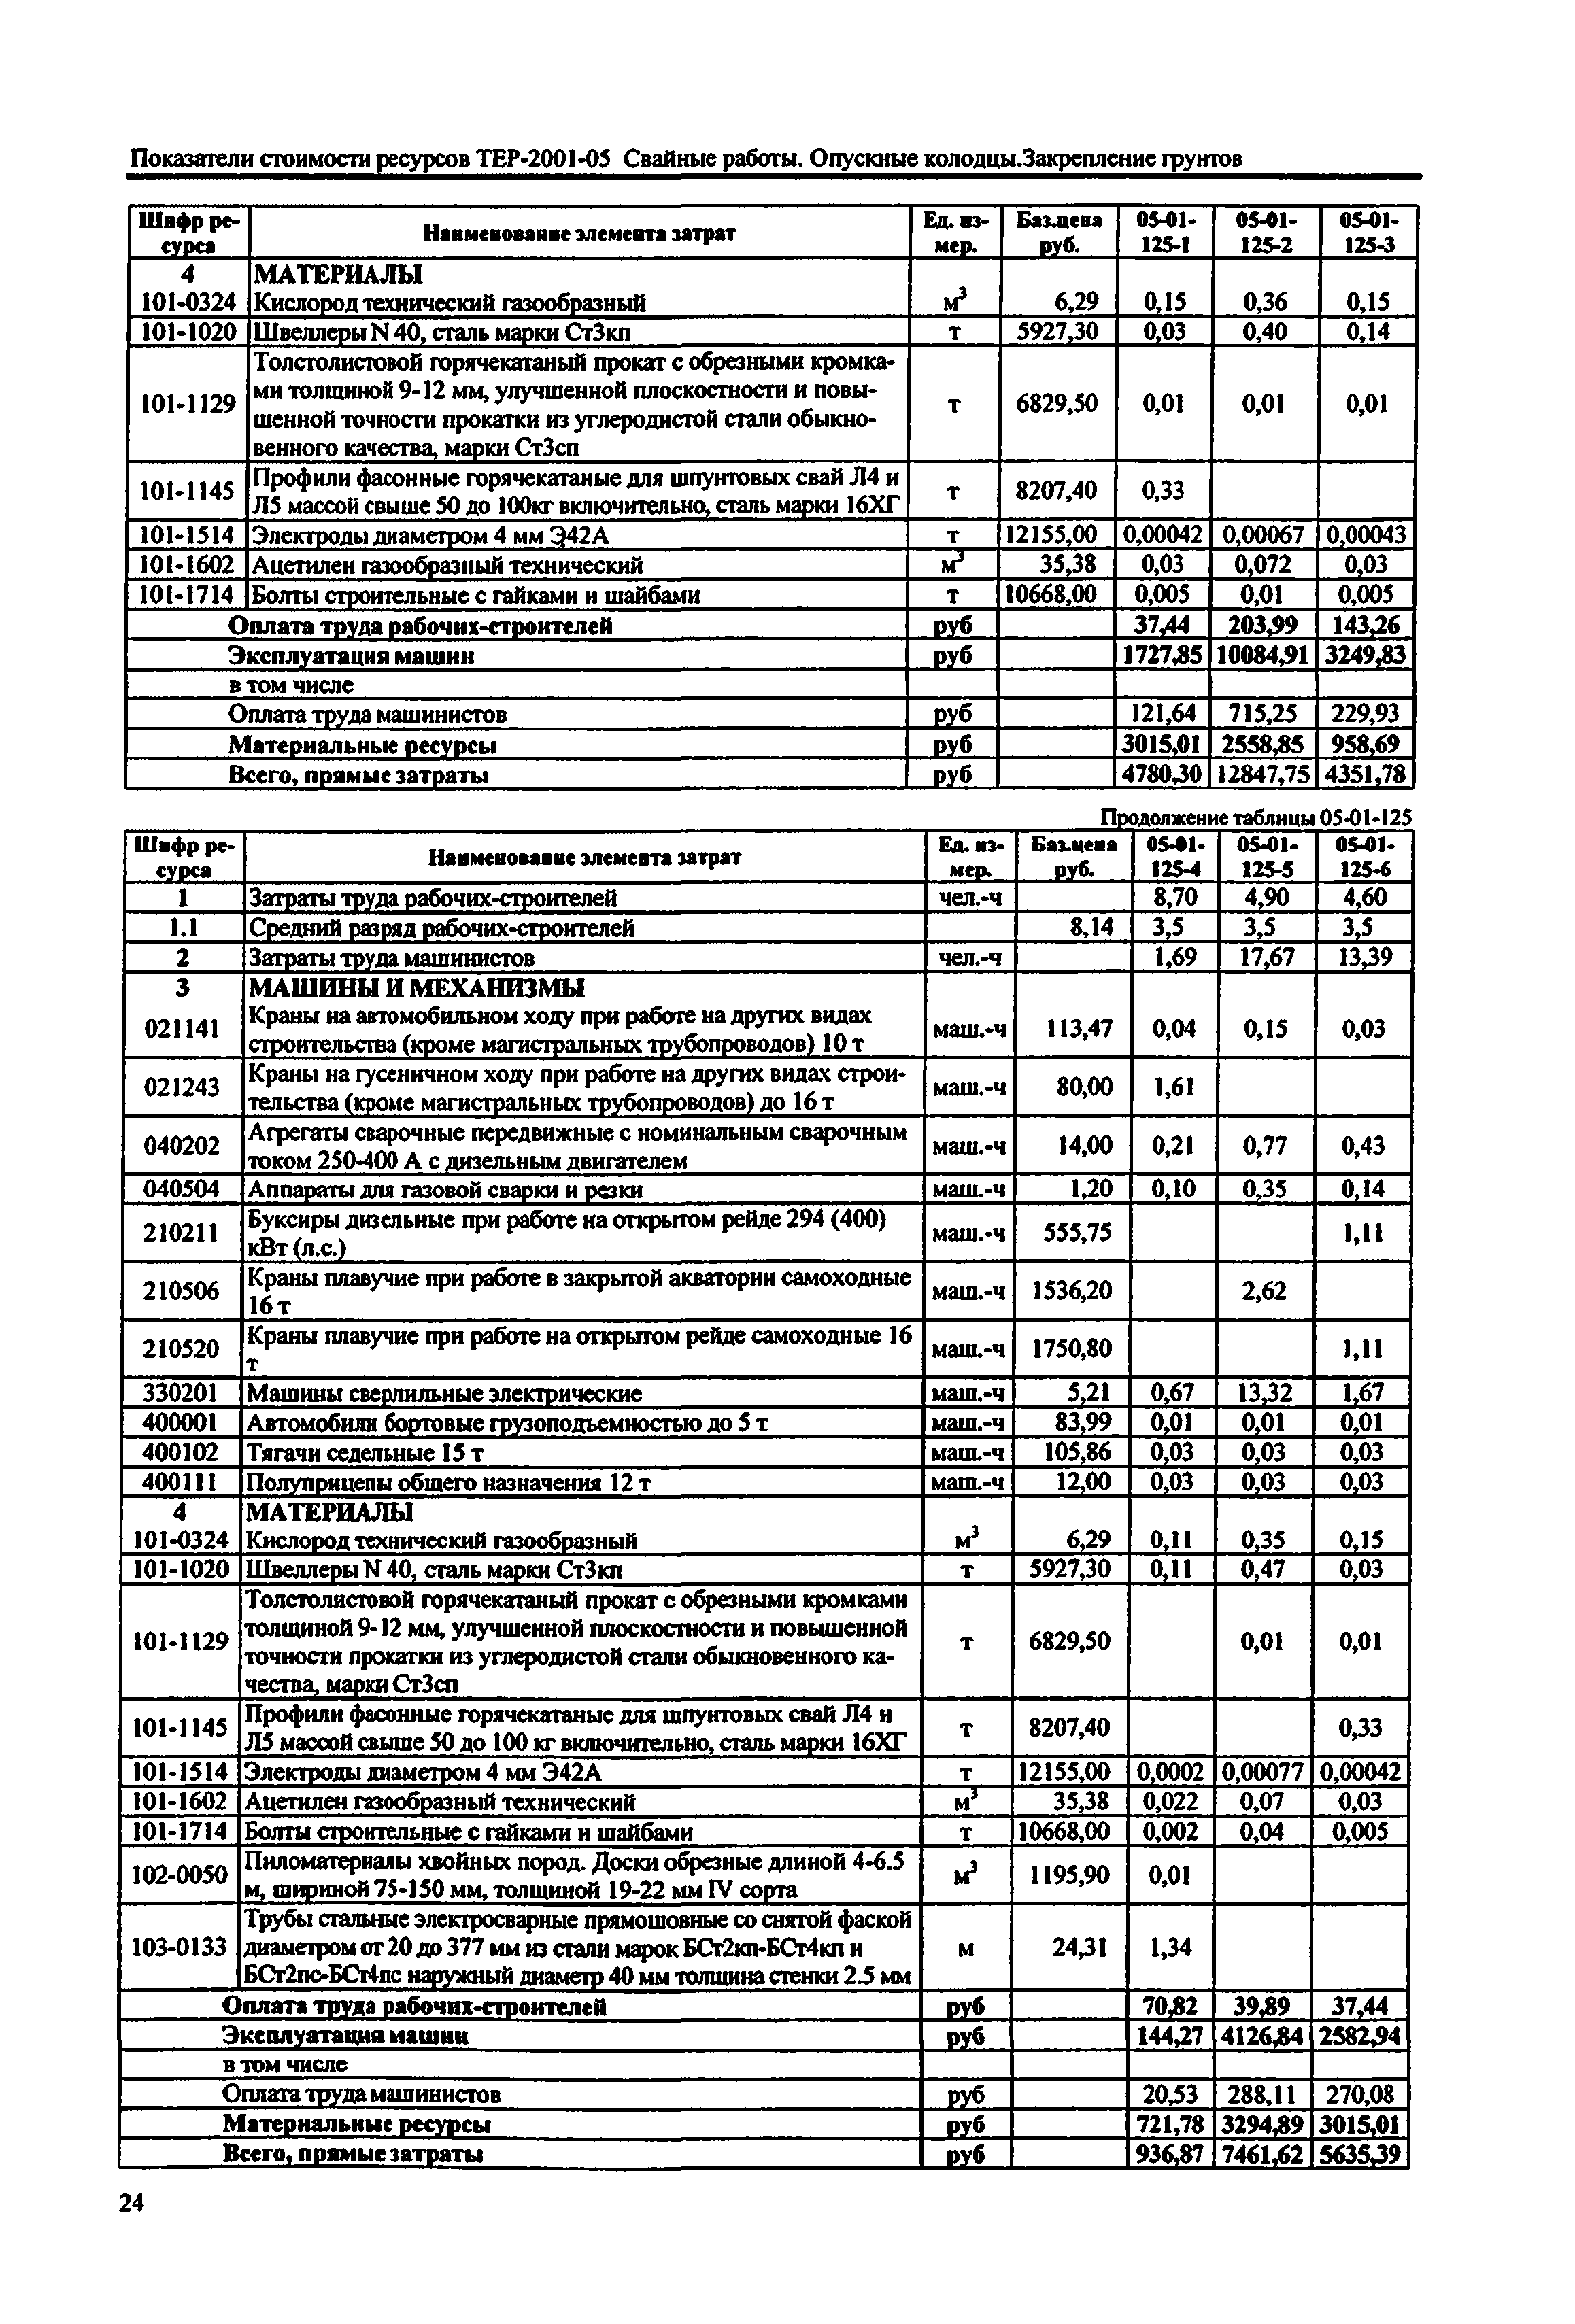 Справочное пособие к ТЕР 81-02-05-2001